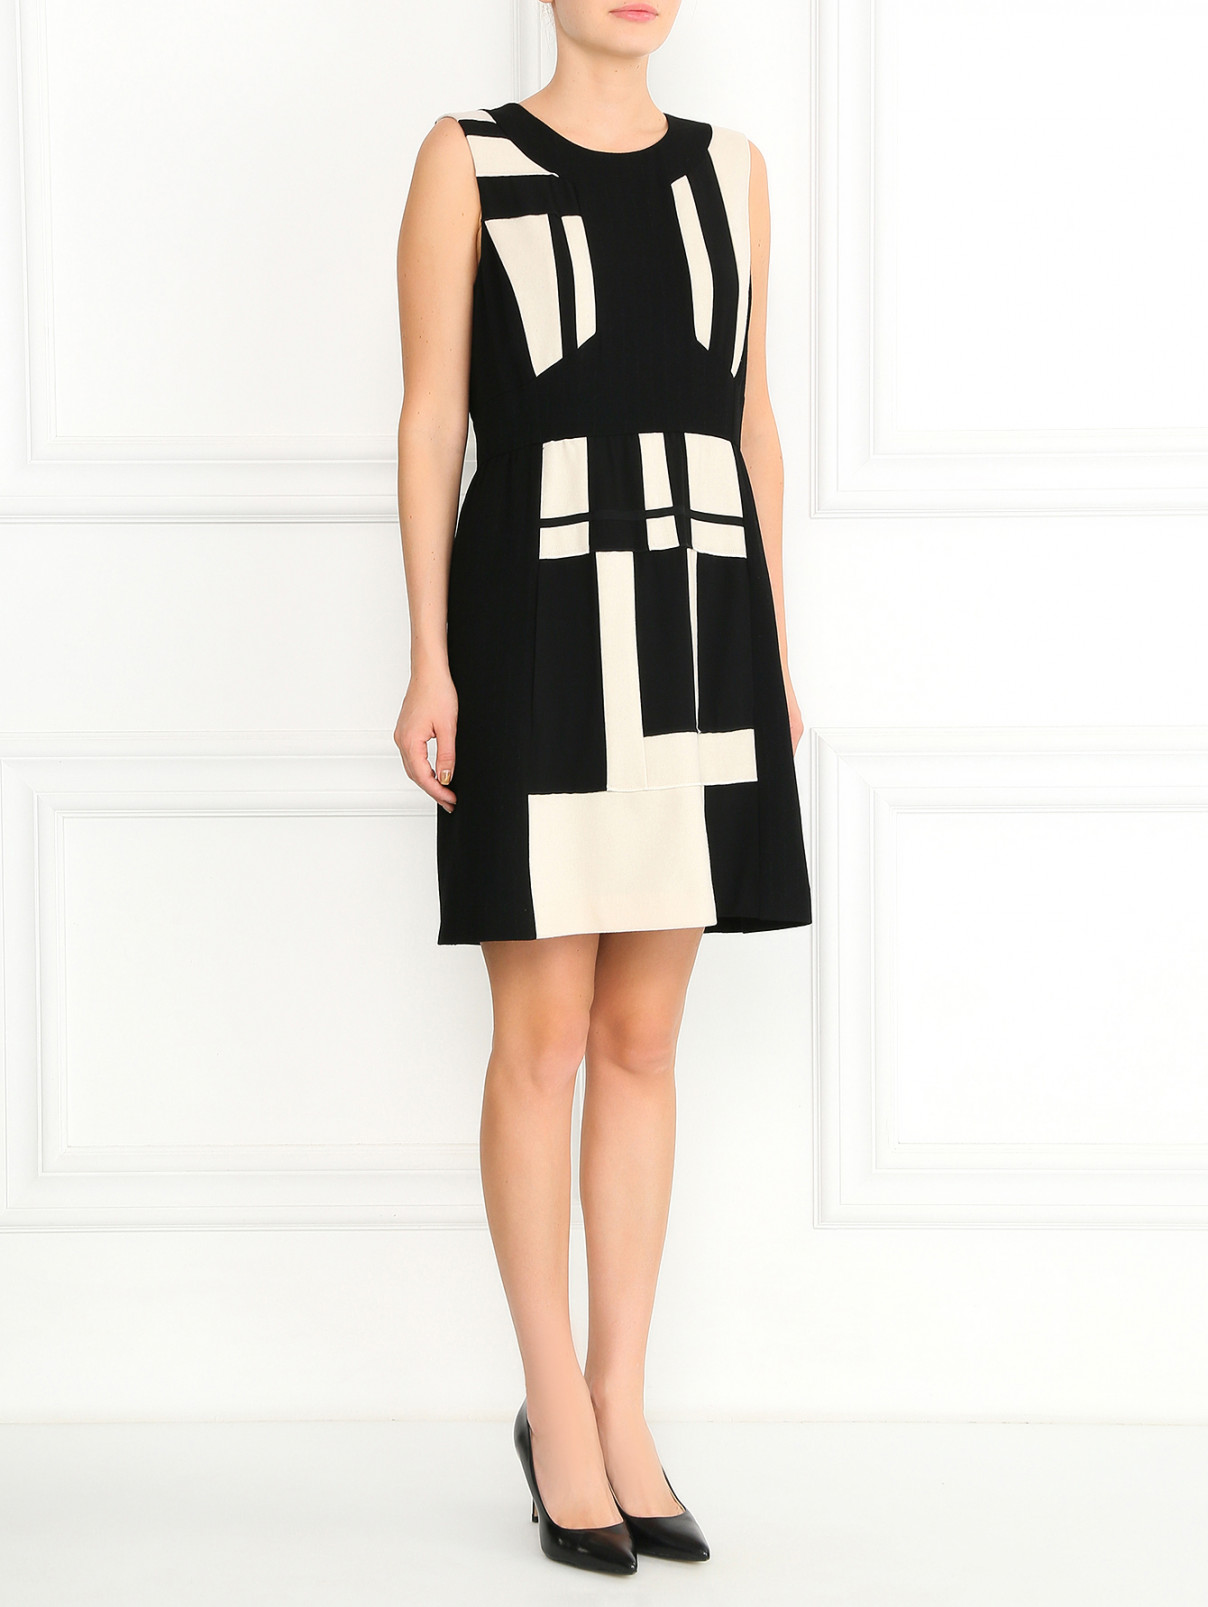 Платье-футляр из шерсти с контрастными вставками Isola Marras  –  Модель Общий вид  – Цвет:  Черный